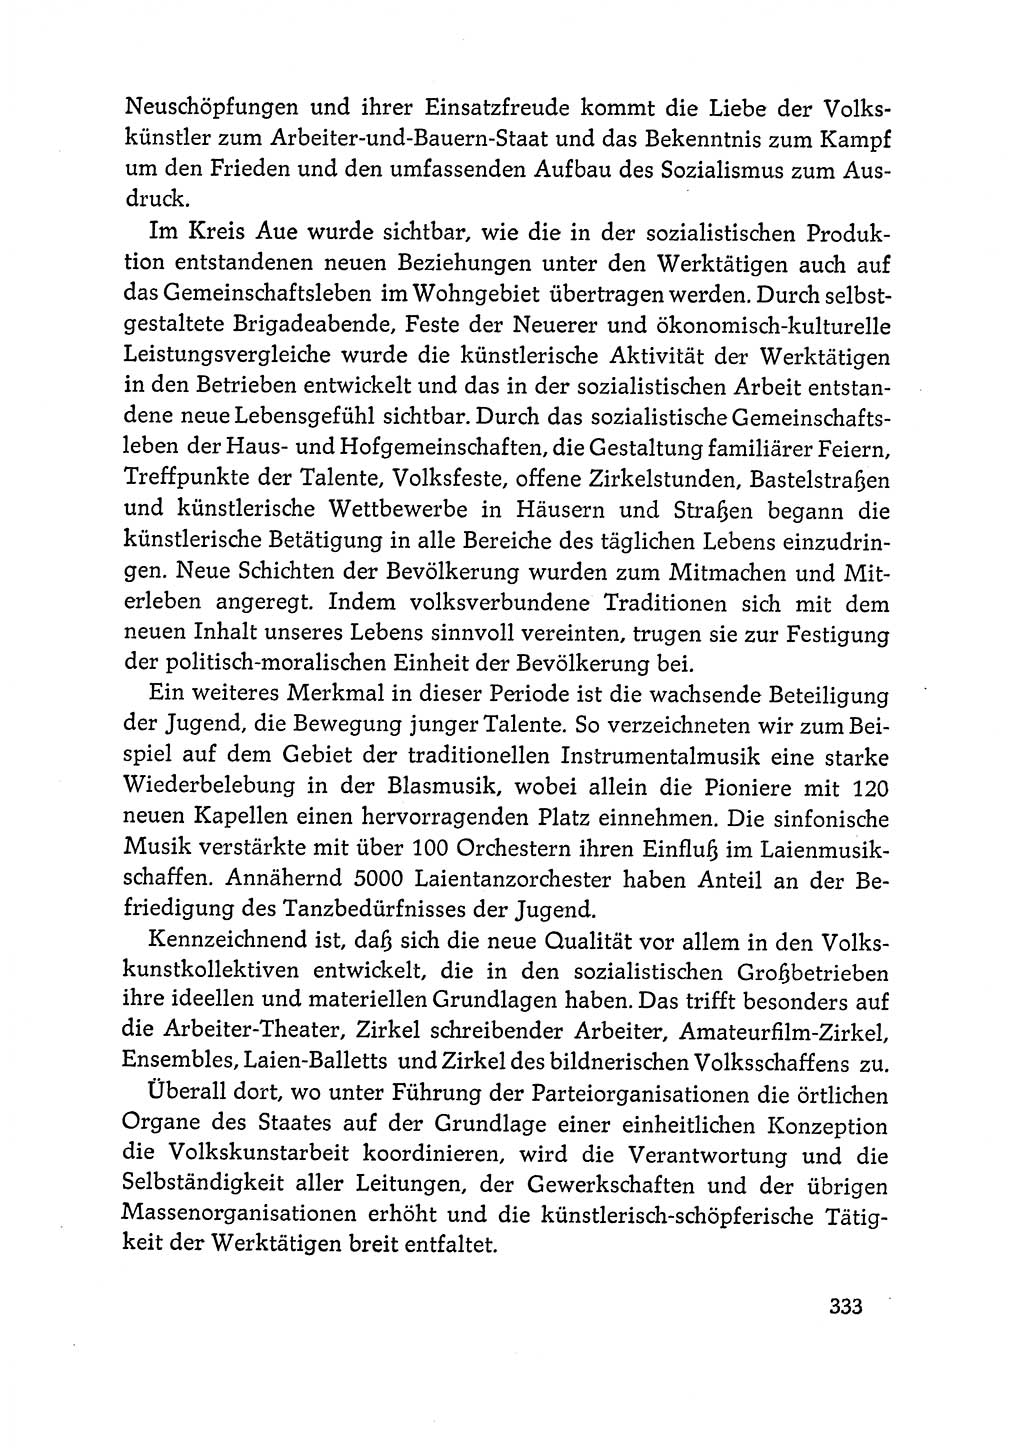 Dokumente der Sozialistischen Einheitspartei Deutschlands (SED) [Deutsche Demokratische Republik (DDR)] 1964-1965, Seite 333 (Dok. SED DDR 1964-1965, S. 333)